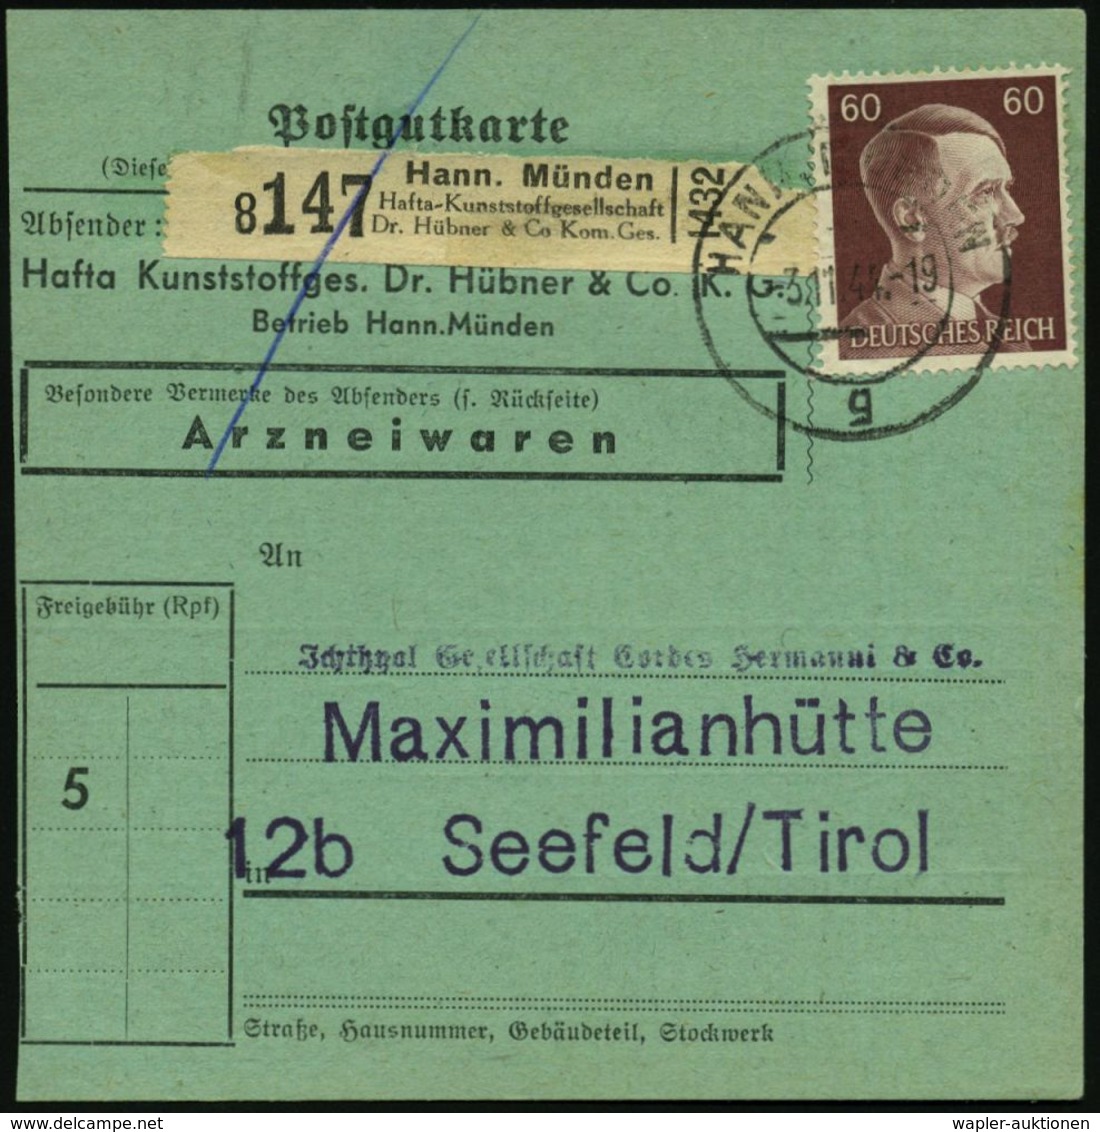 KUNSTSTOFFE & -FASERN / PLASTIK : Hann.Münden/ Hafta-Kunststoffgesellschaft/ Dr. Hübner & Co. Kom. Ges. 1944 (3.11.) Sch - Chimie